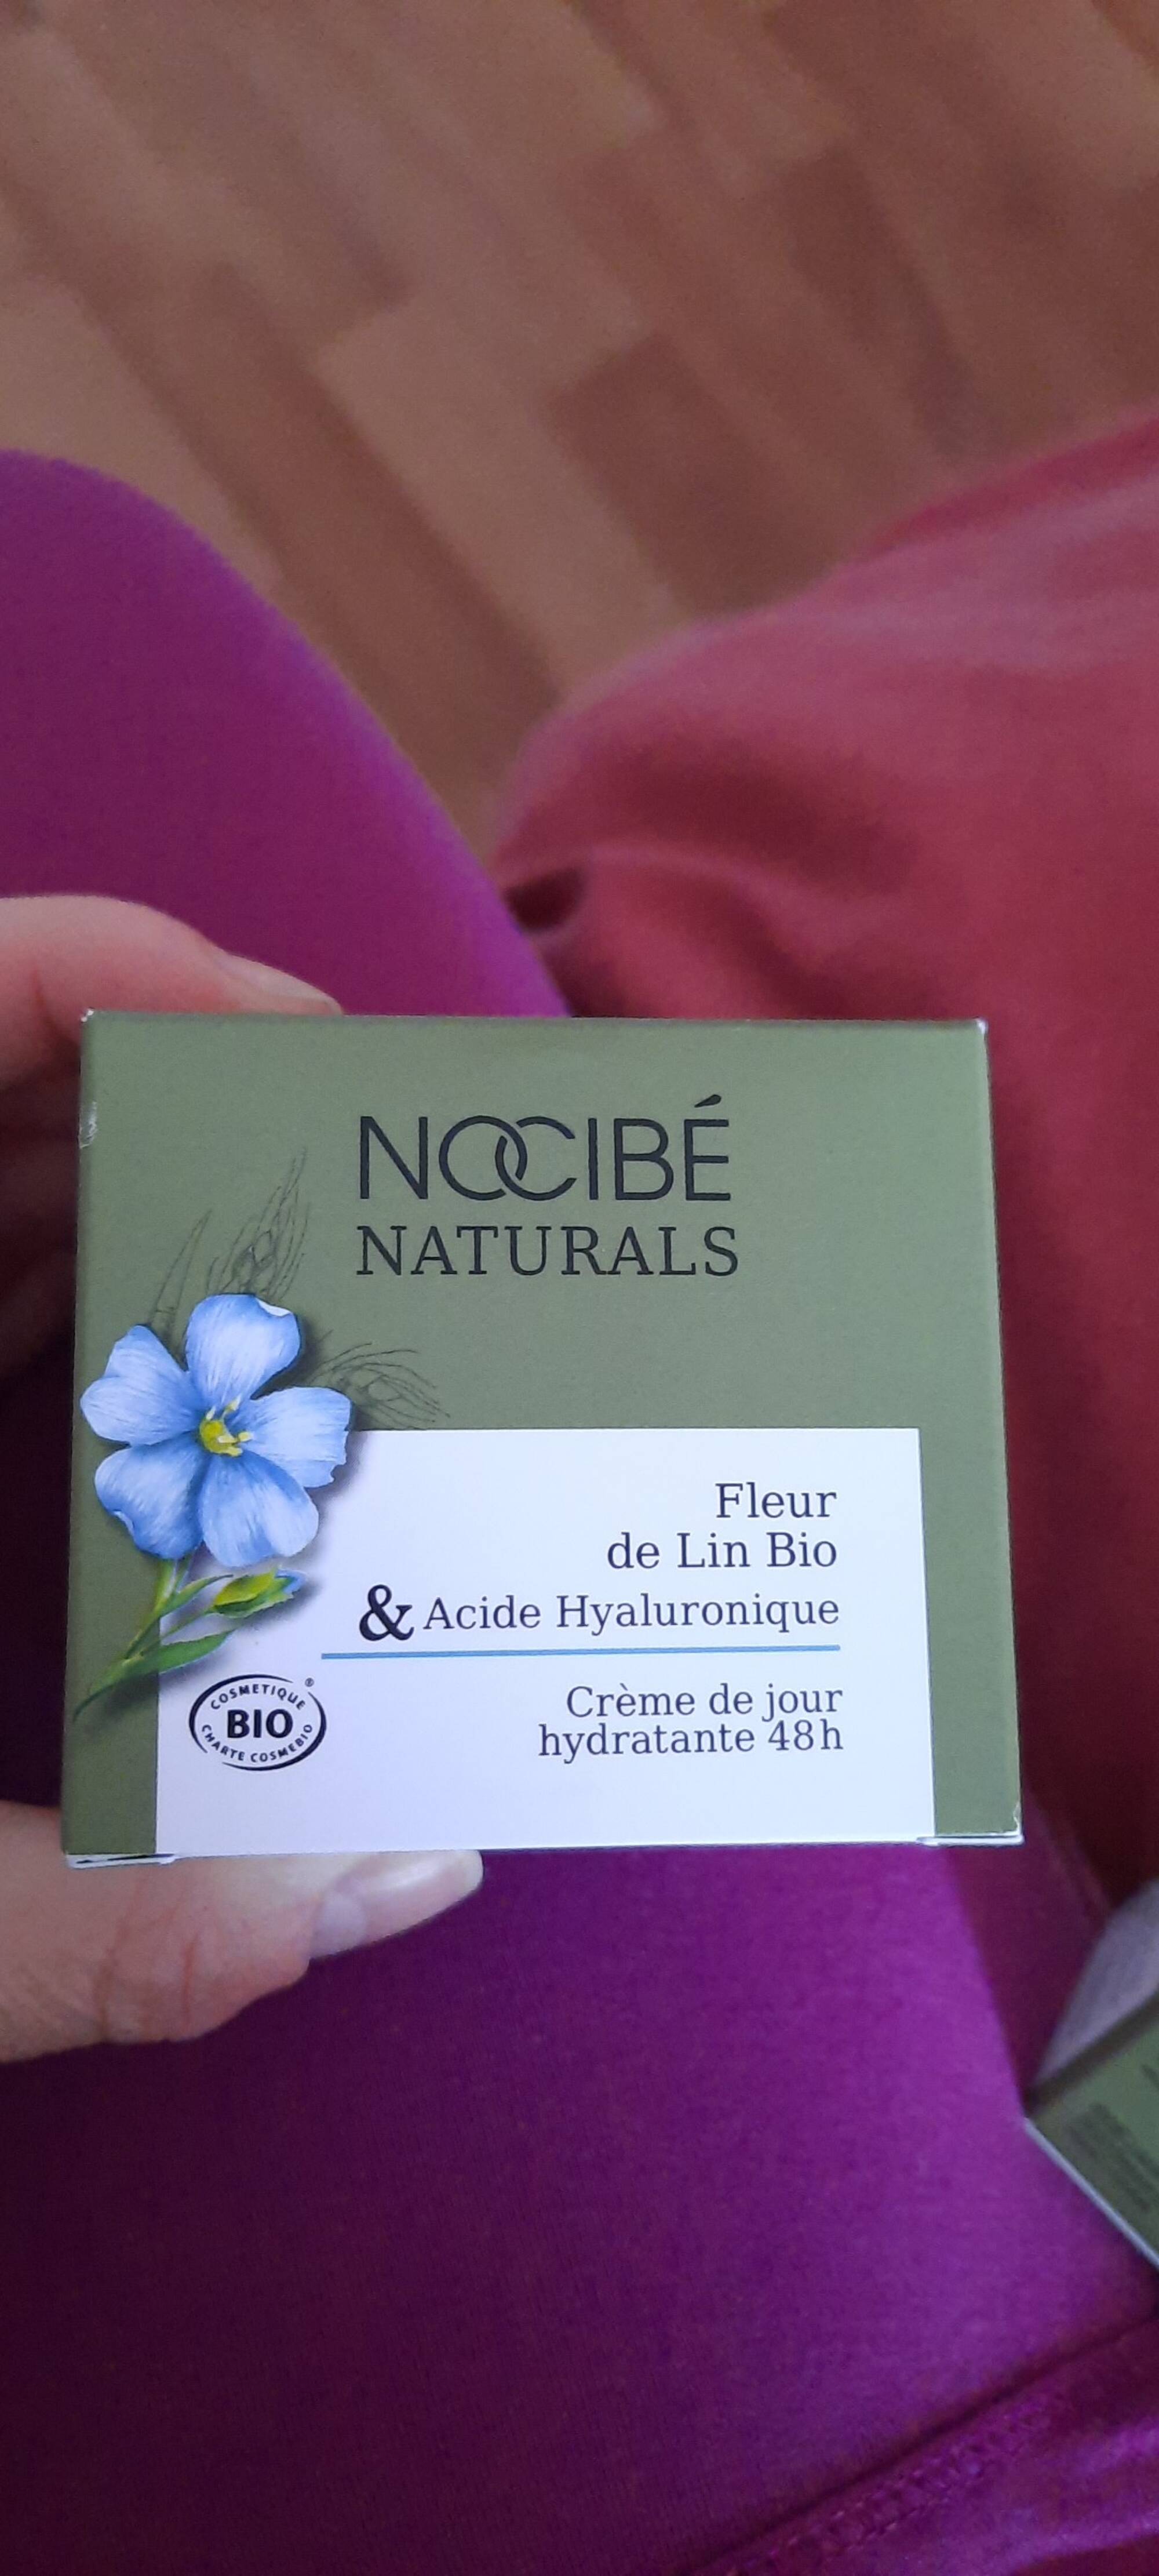 NOCIBÉ - Naturals - Crème de jour hydratante 48h fleur de lin bio & acide hyaluronique